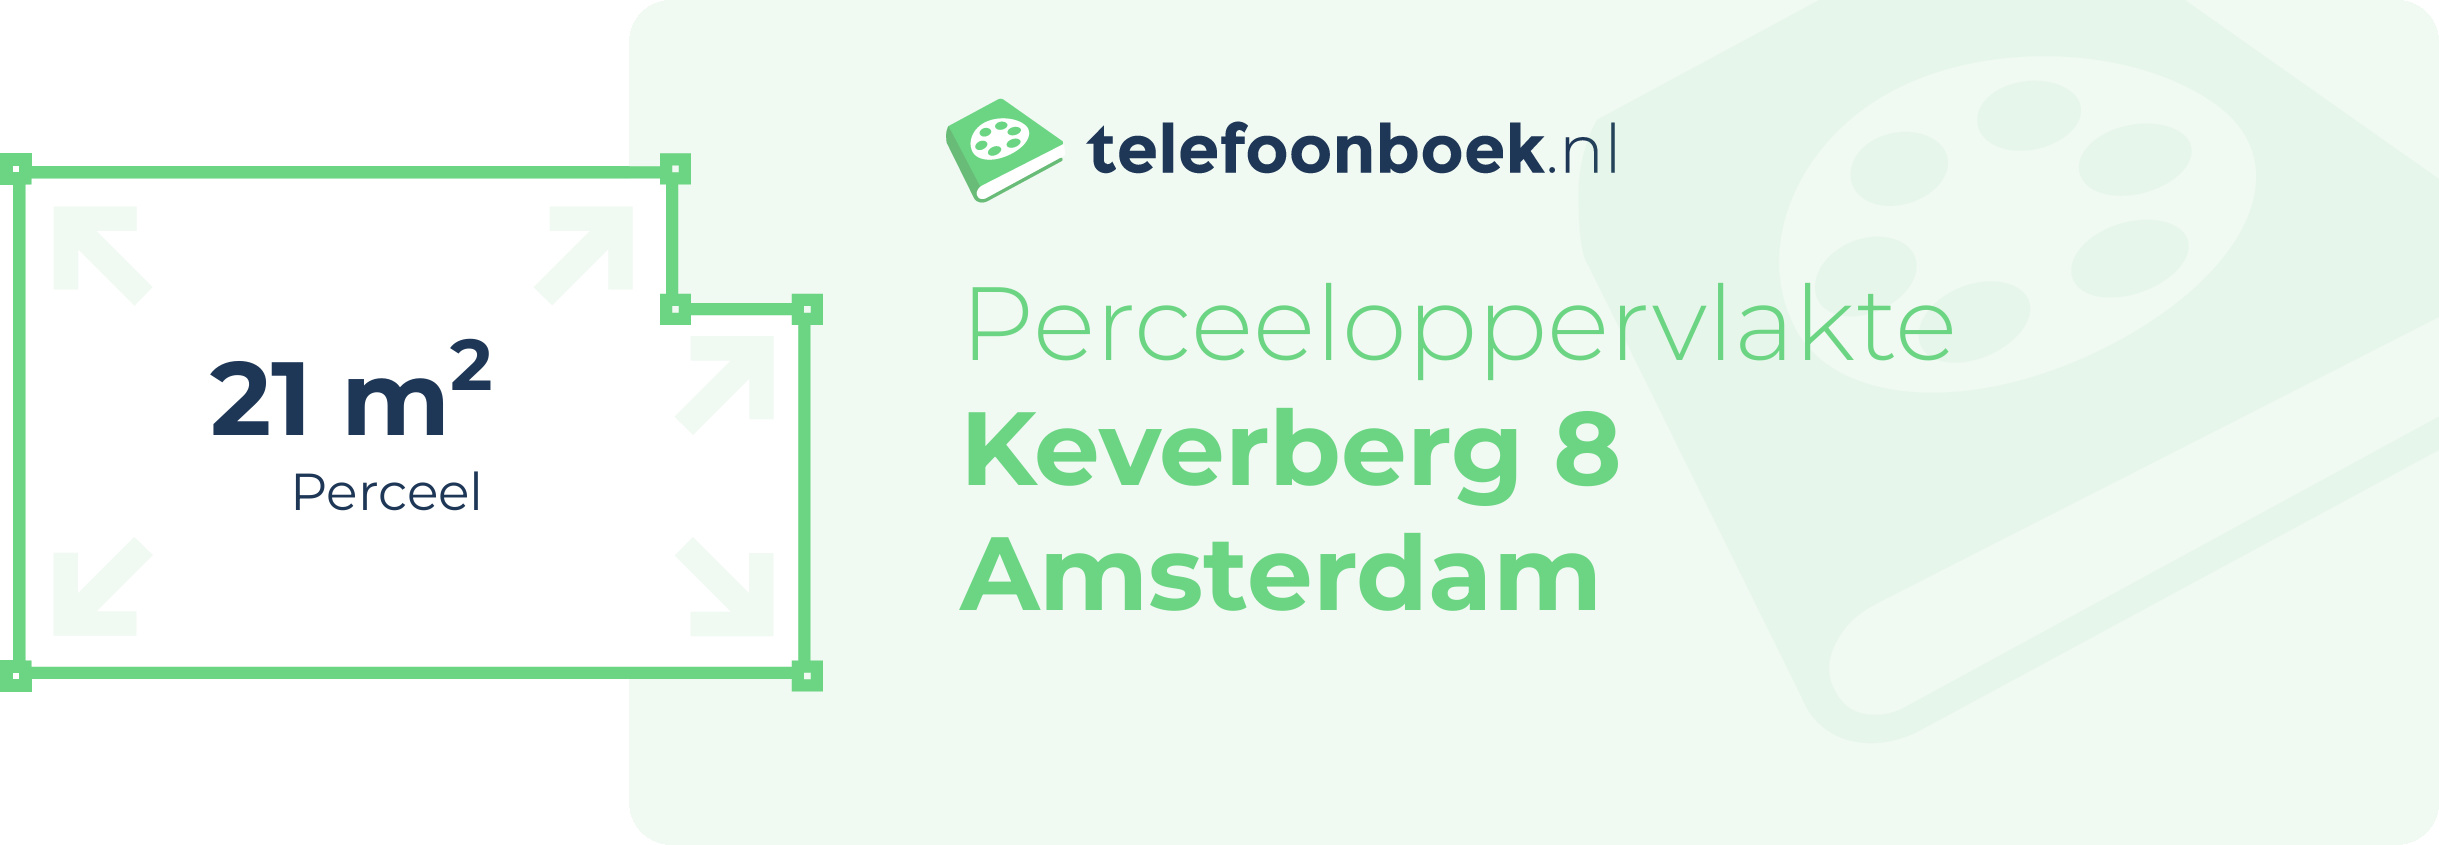 Perceeloppervlakte Keverberg 8 Amsterdam